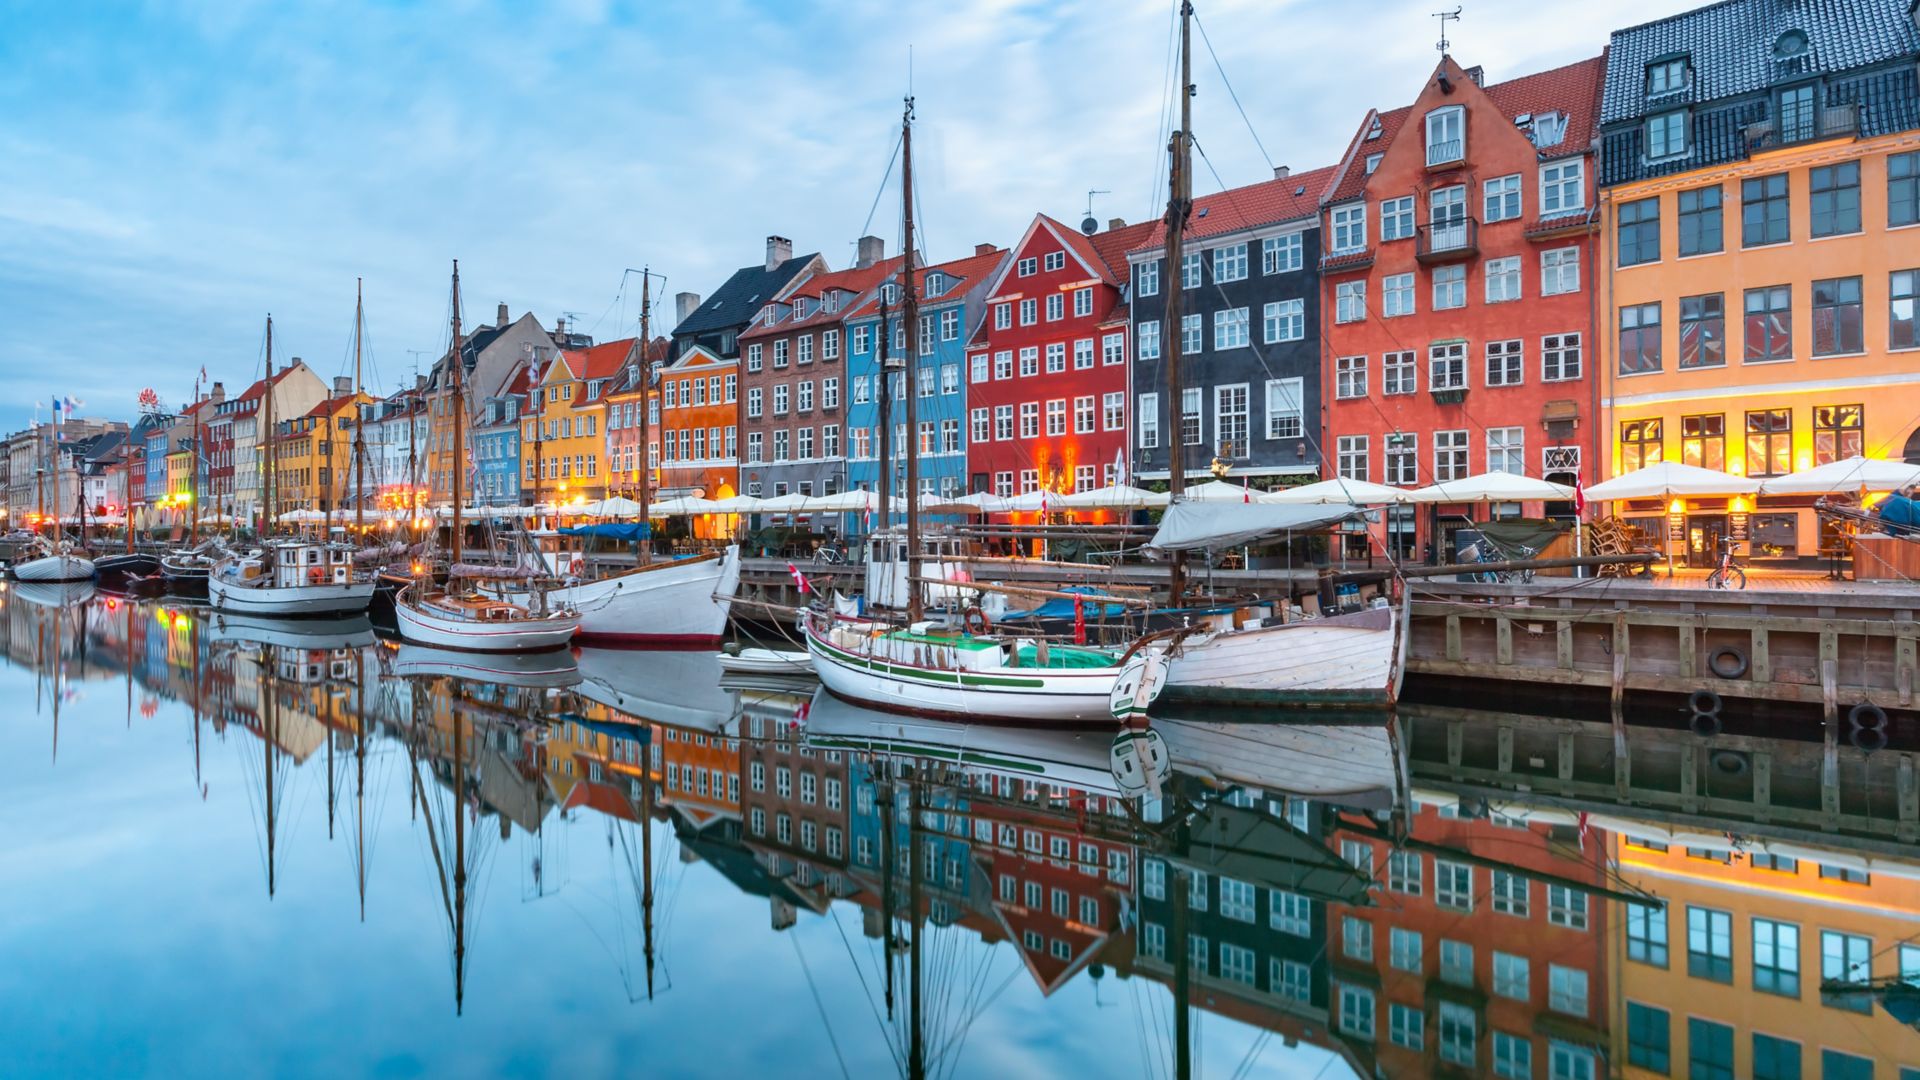 Nyhavn con facciate colorate di vecchie case e vecchie navi nel centro storico di Copenaghen, capitale della Danimarca.